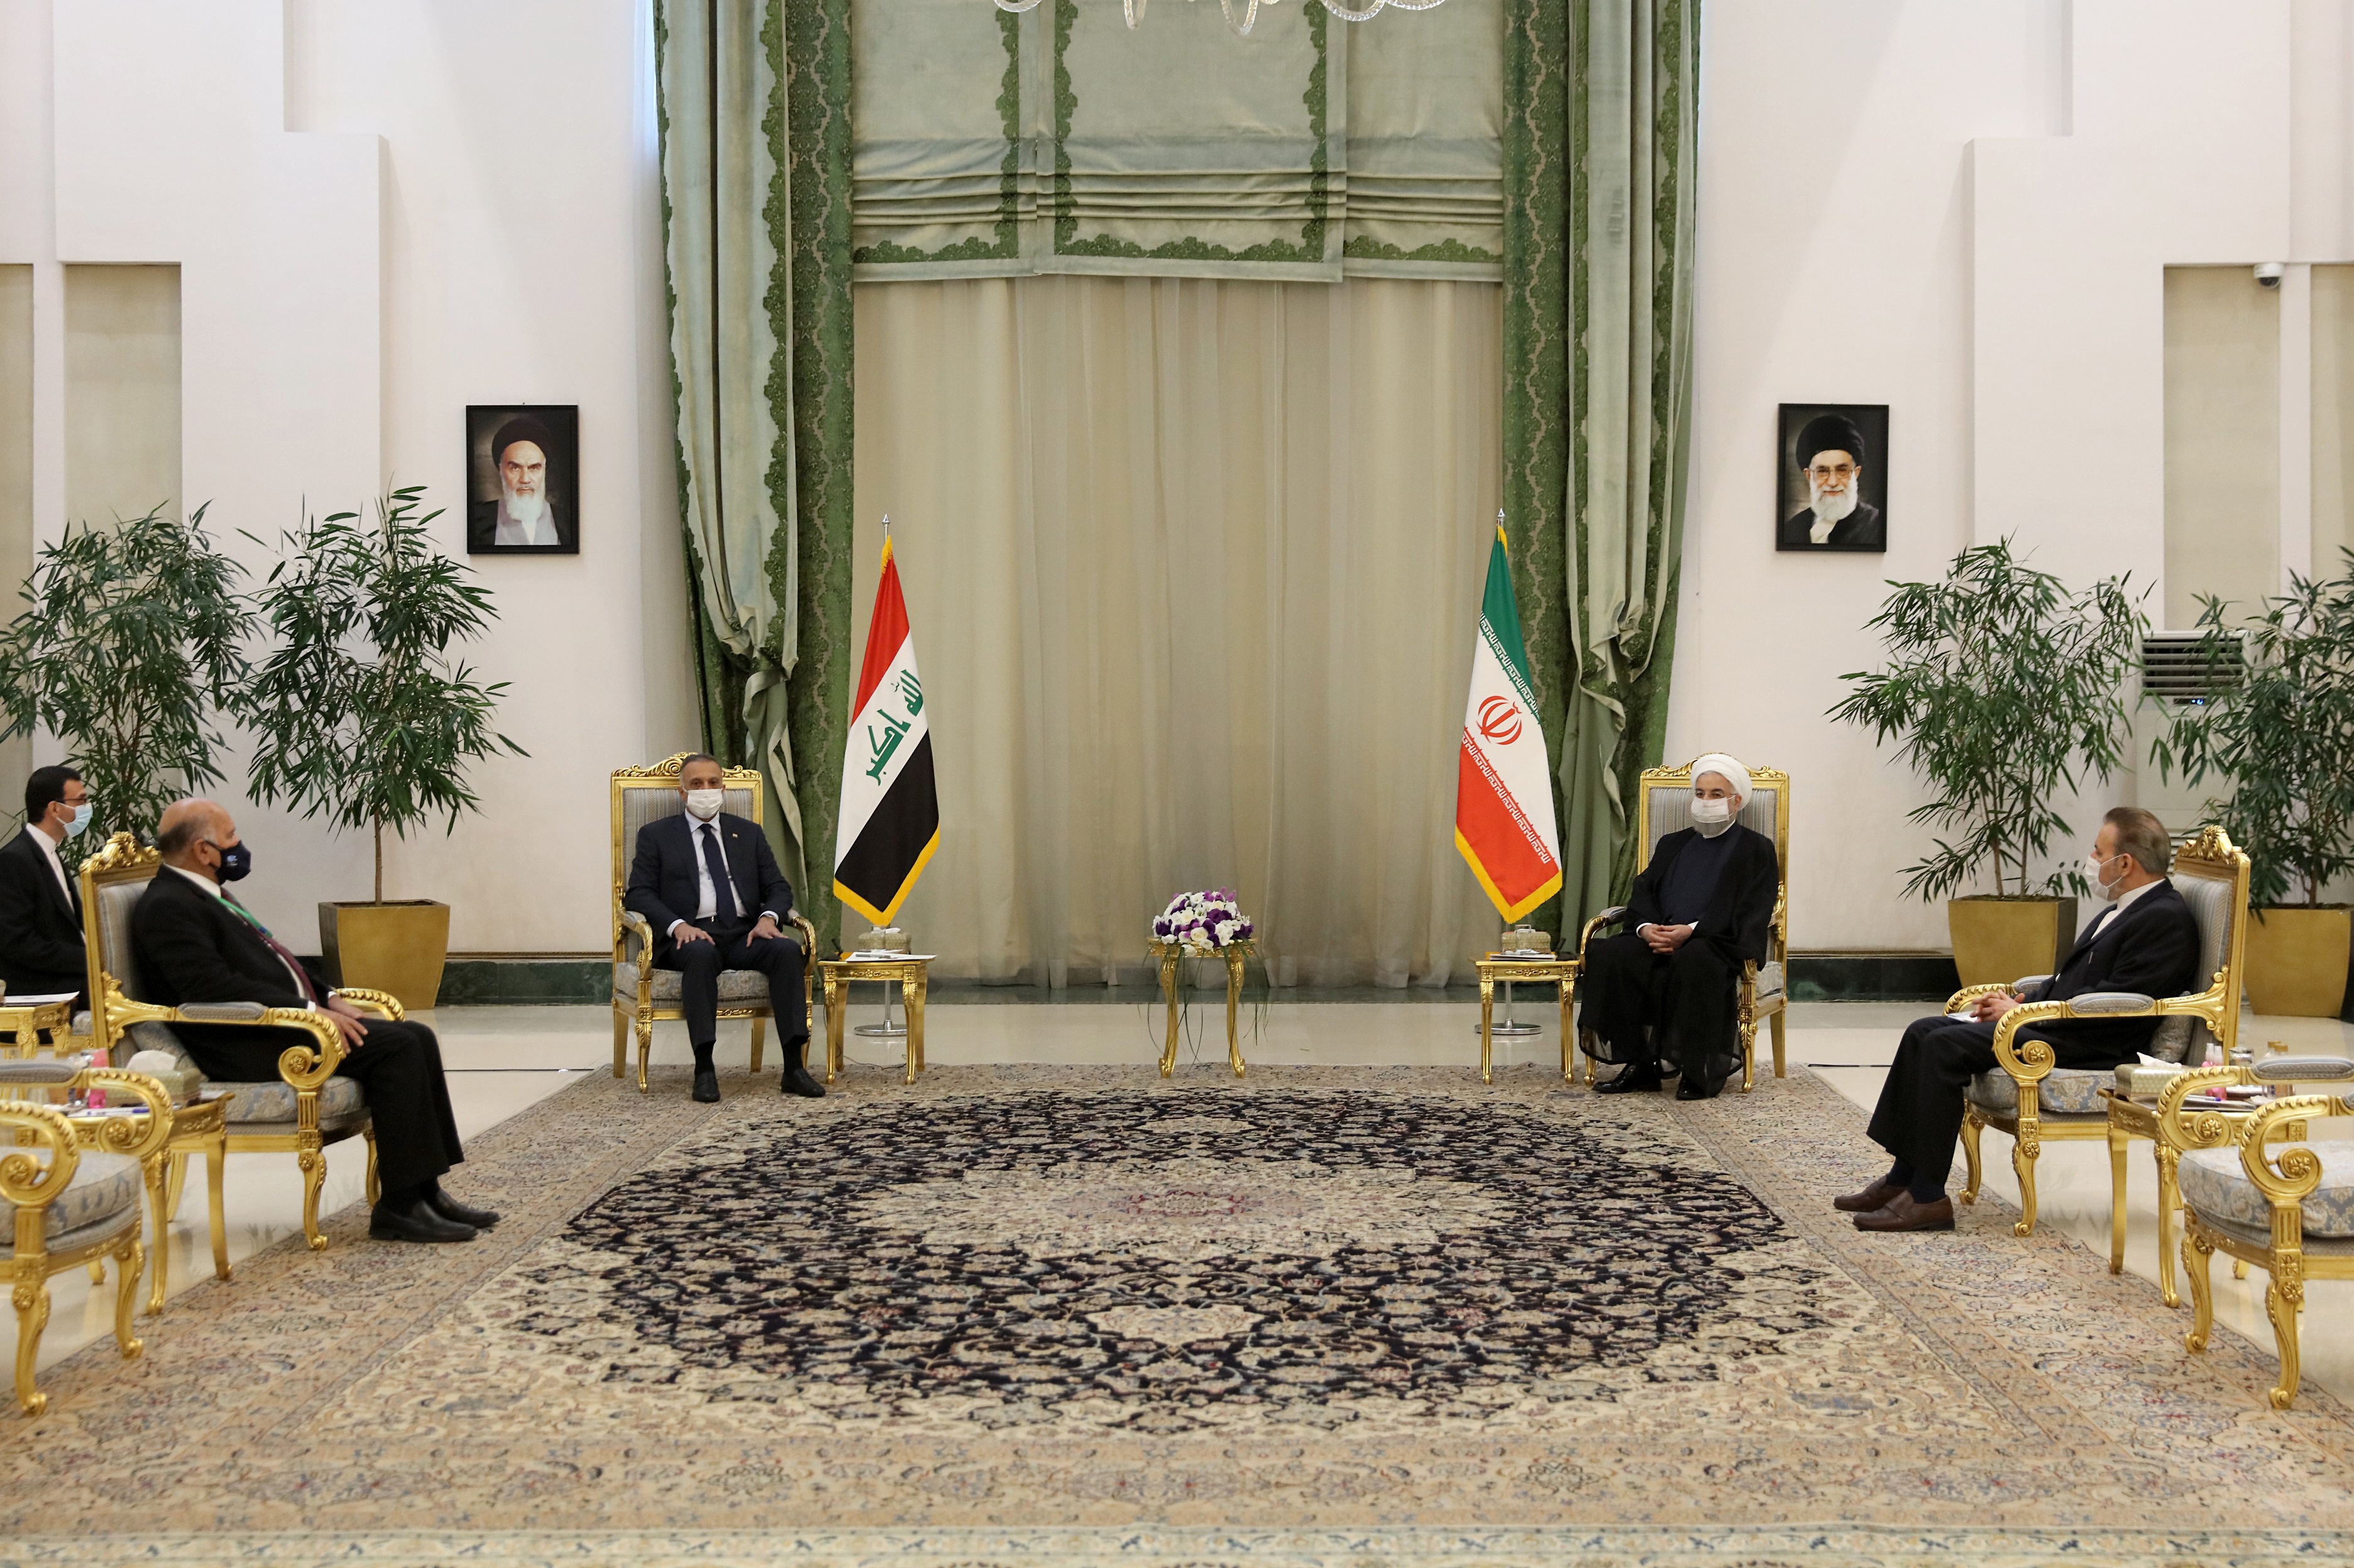 حاکمیت و امنیت ملی ایران و عراق به هم گره خورده است/ تشکیل کمیته پیگیری برای تسریع در اجرای توافقات مشترک تهران_بغداد